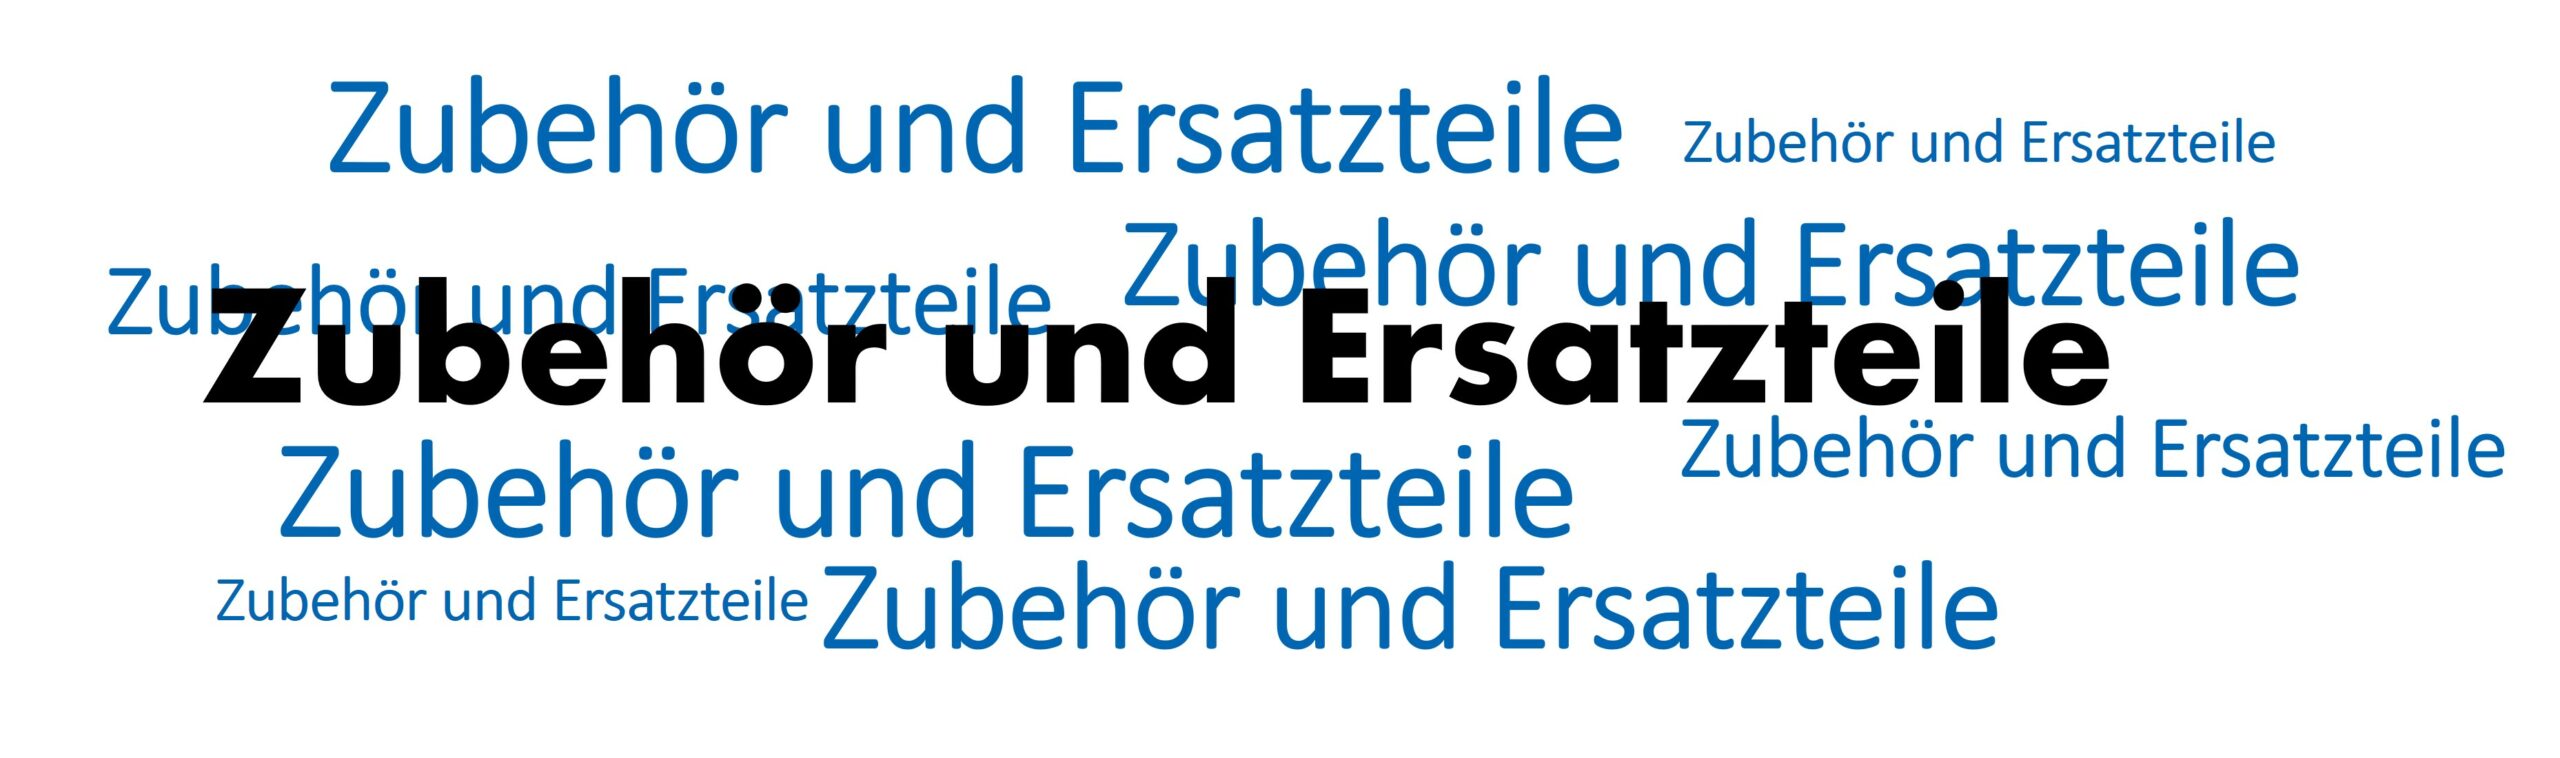 Ersatzteile und Zubehör - Womo-Eder GmbH